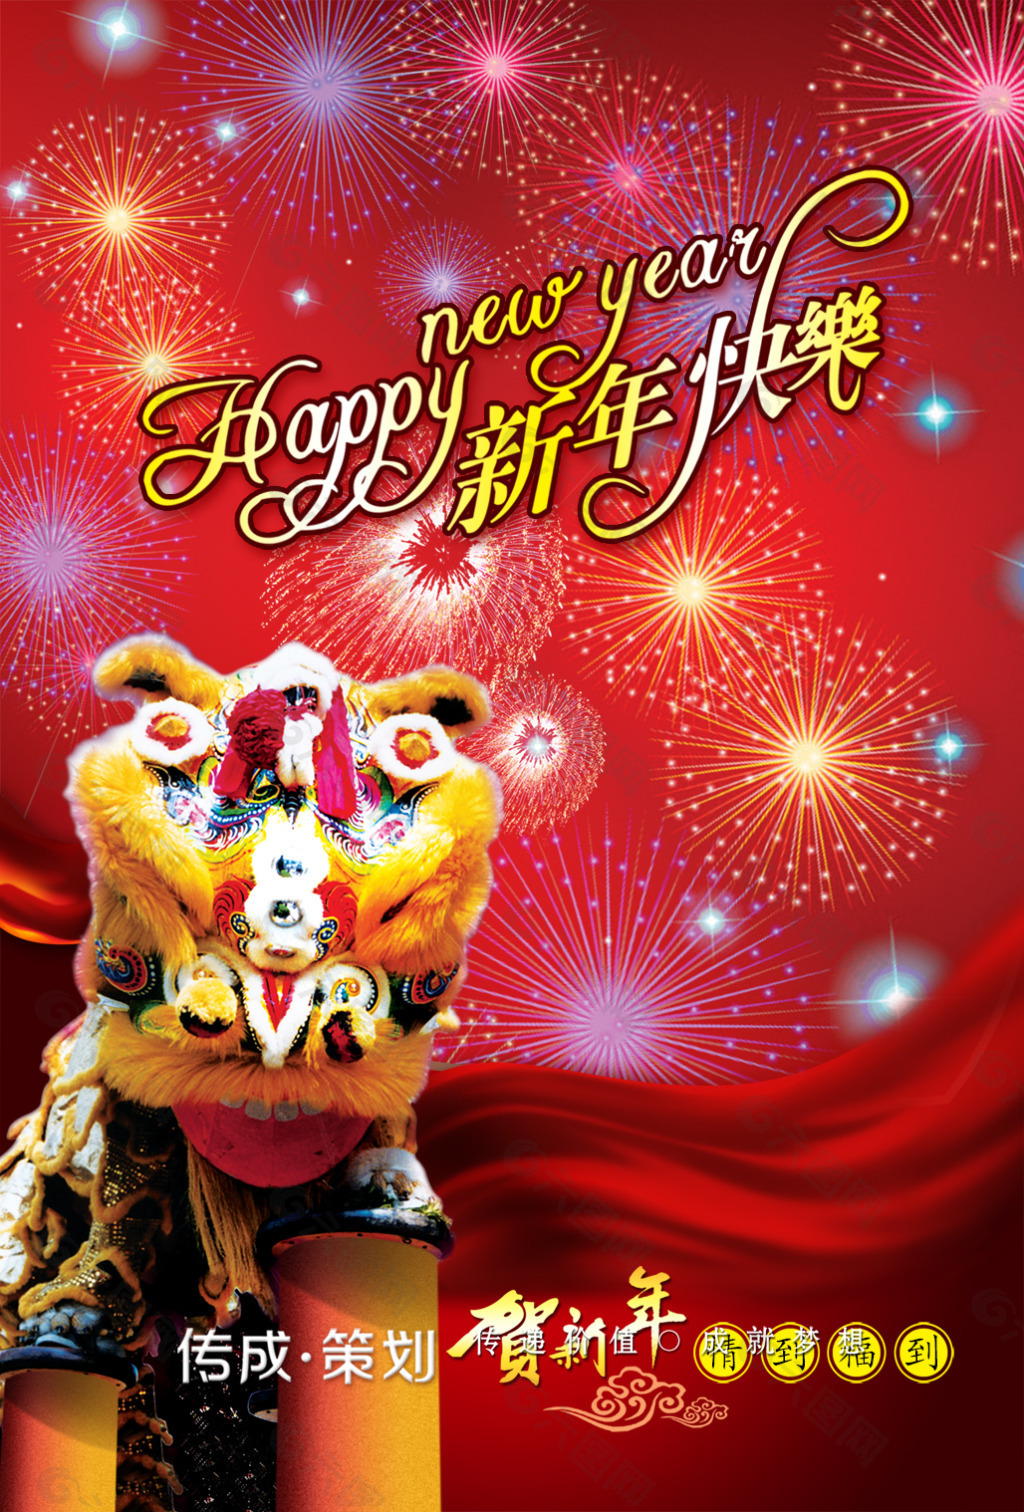 红黄色卡通狮子矢量新年节日庆祝中文贺卡 - 模板 - Canva可画